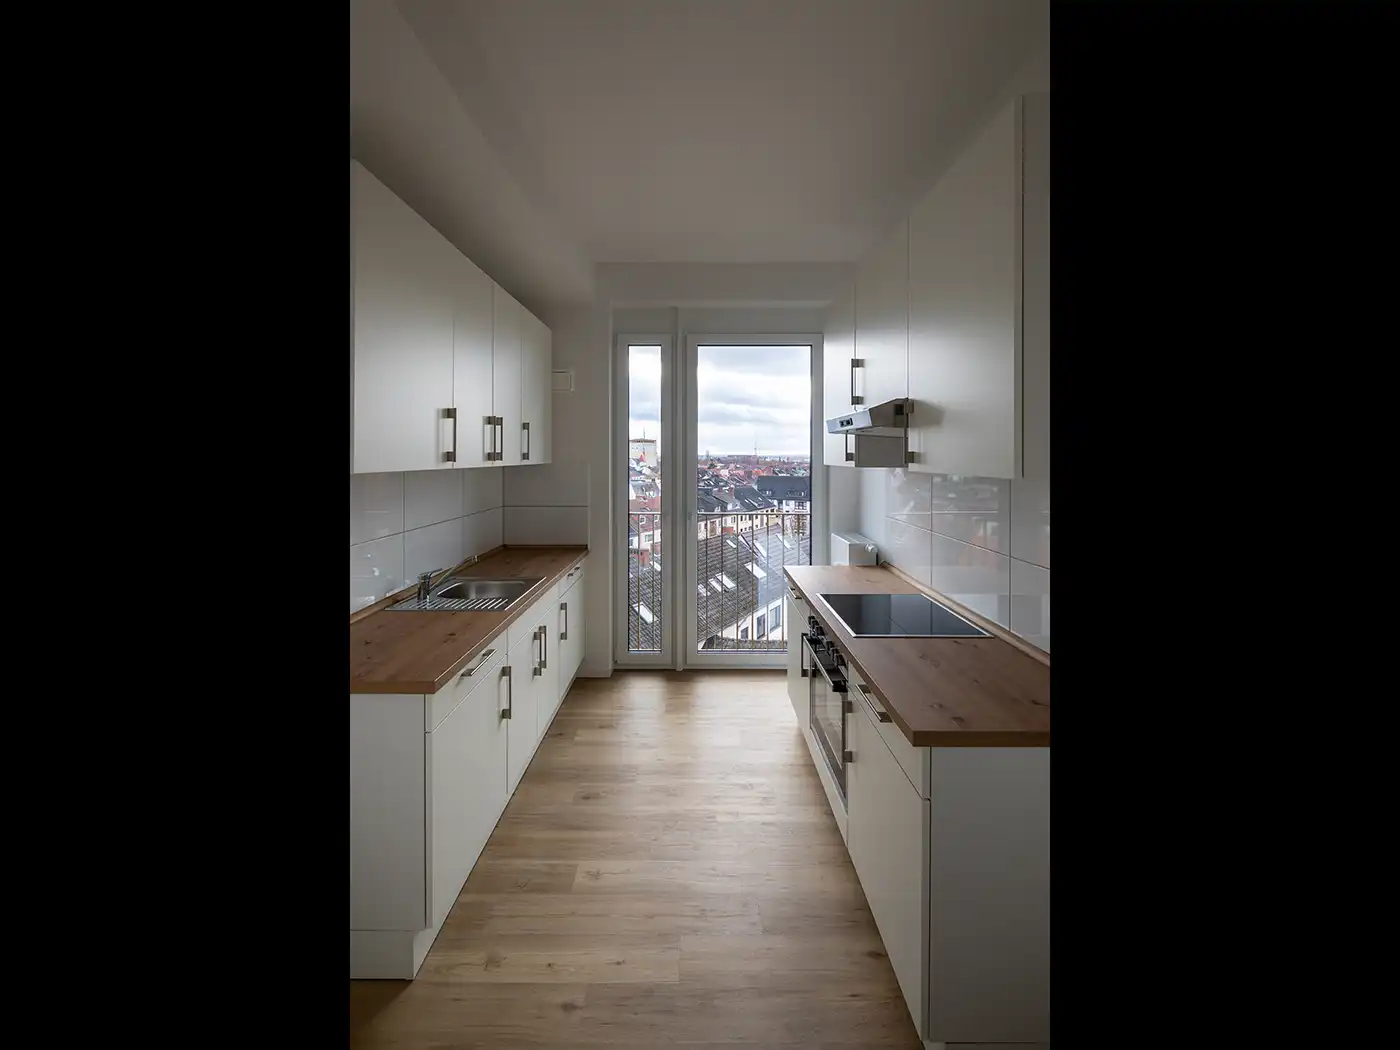 Grünes Haus: Blick in eine Küche.